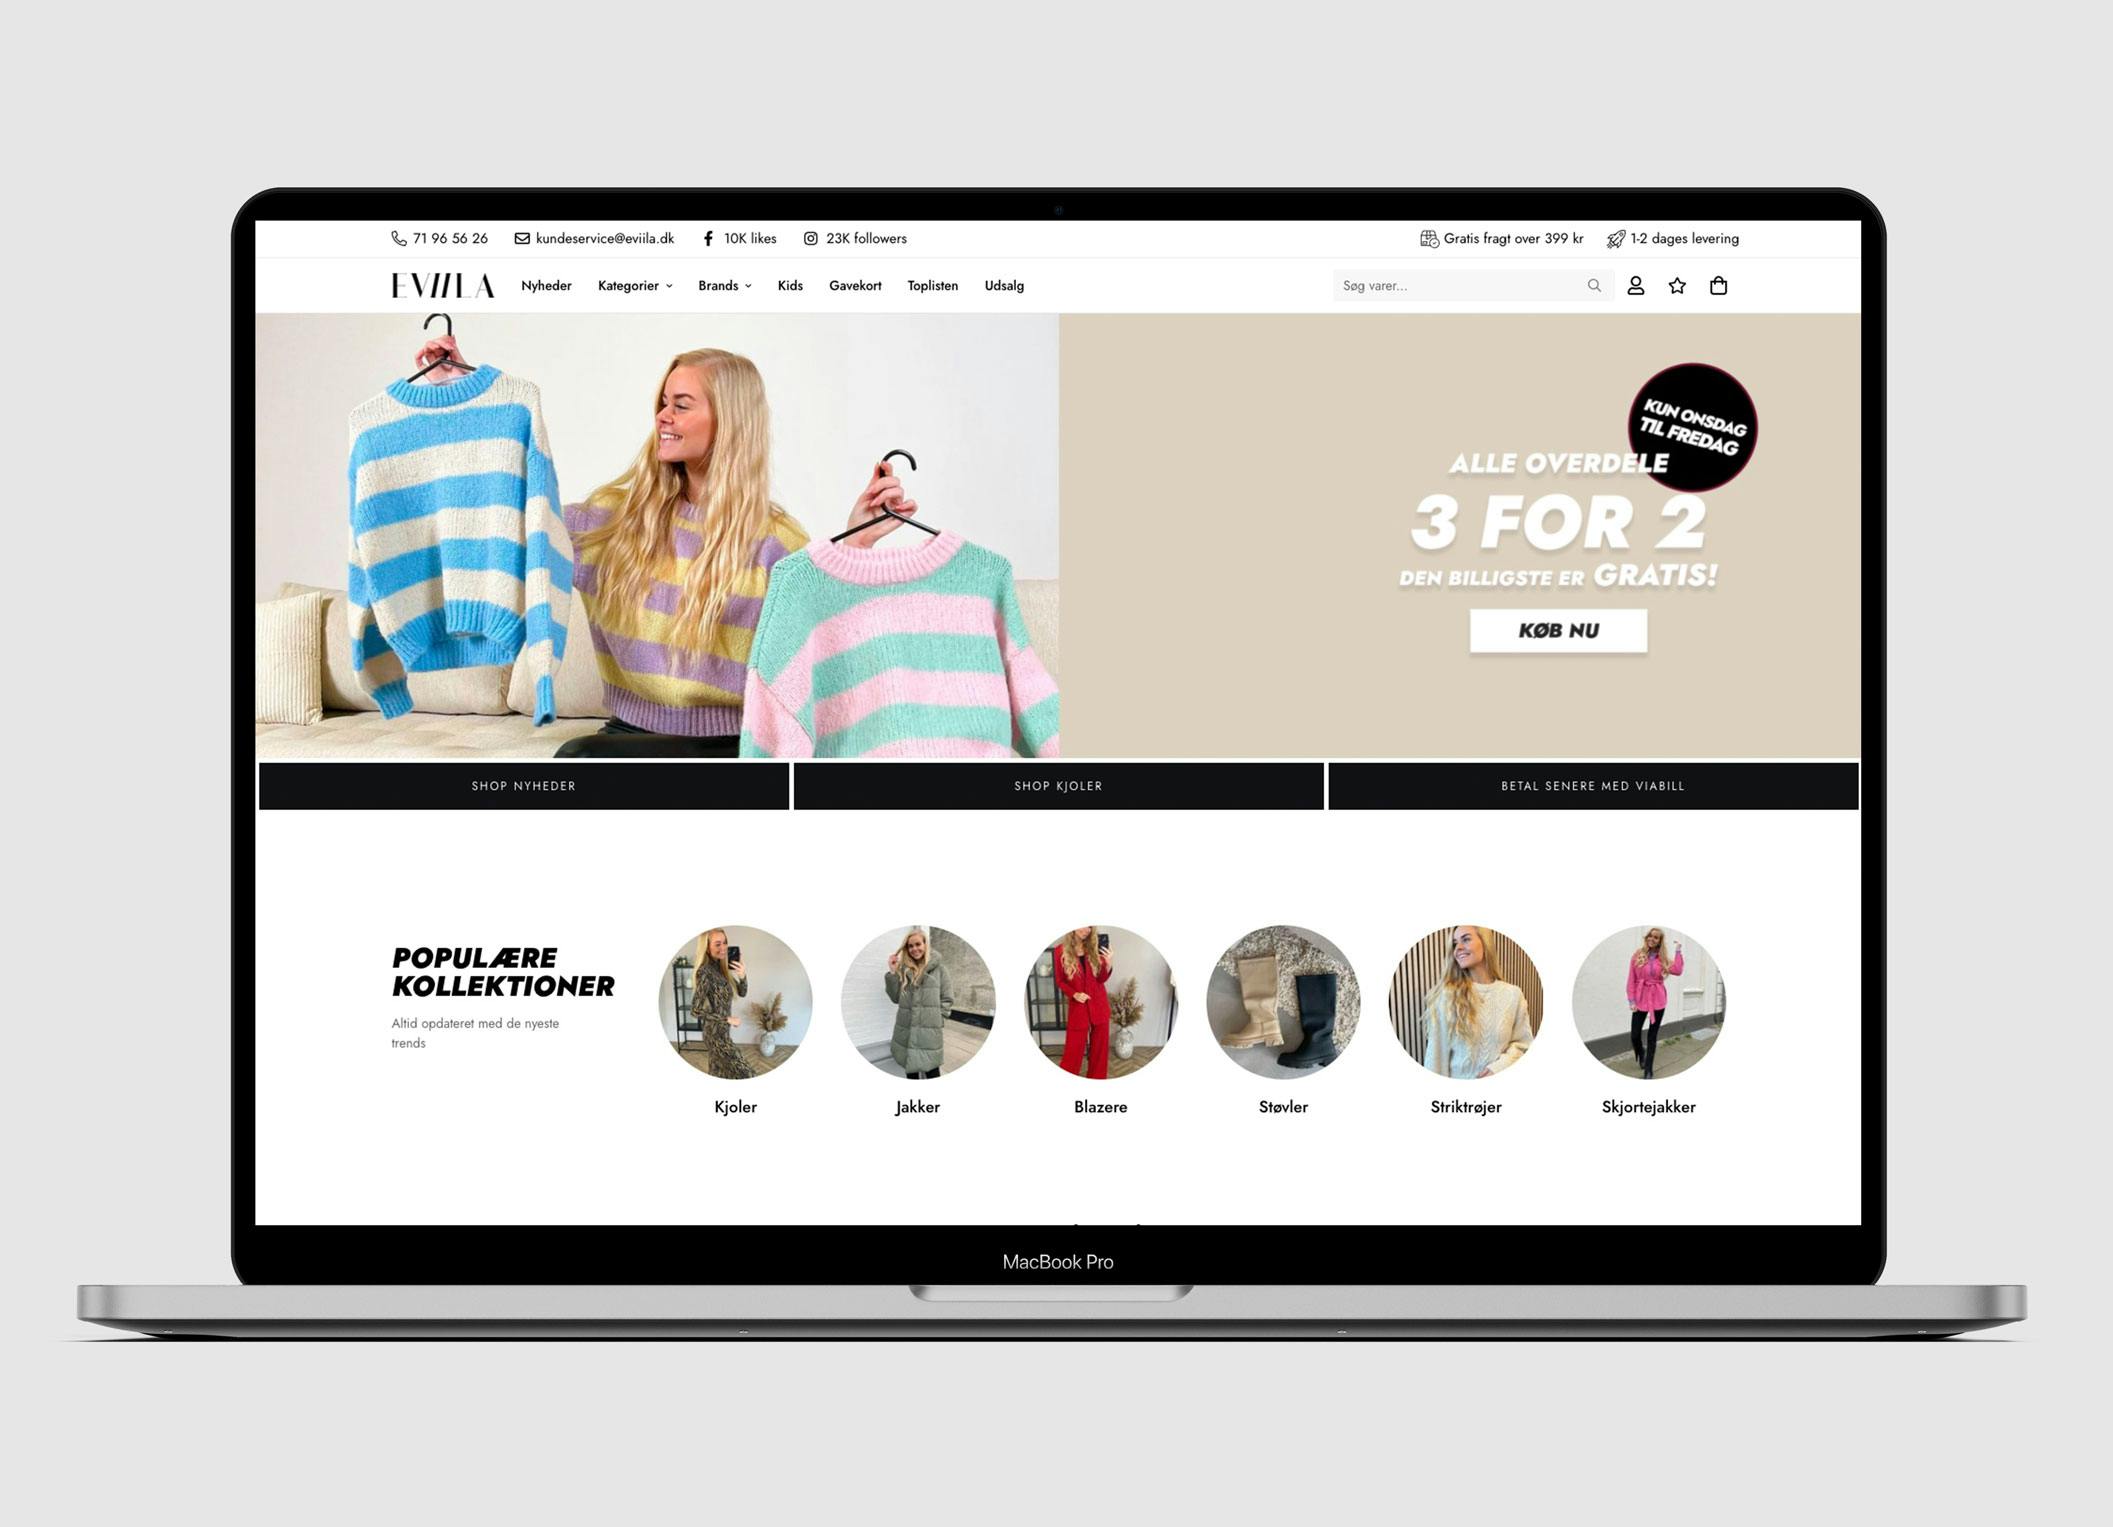 Webshop med salg af tøj - Omsætning 2021 på 9.400.000 kr. - 1600 anmeldelser på Trustpilot en score på 4,8 stjerner.